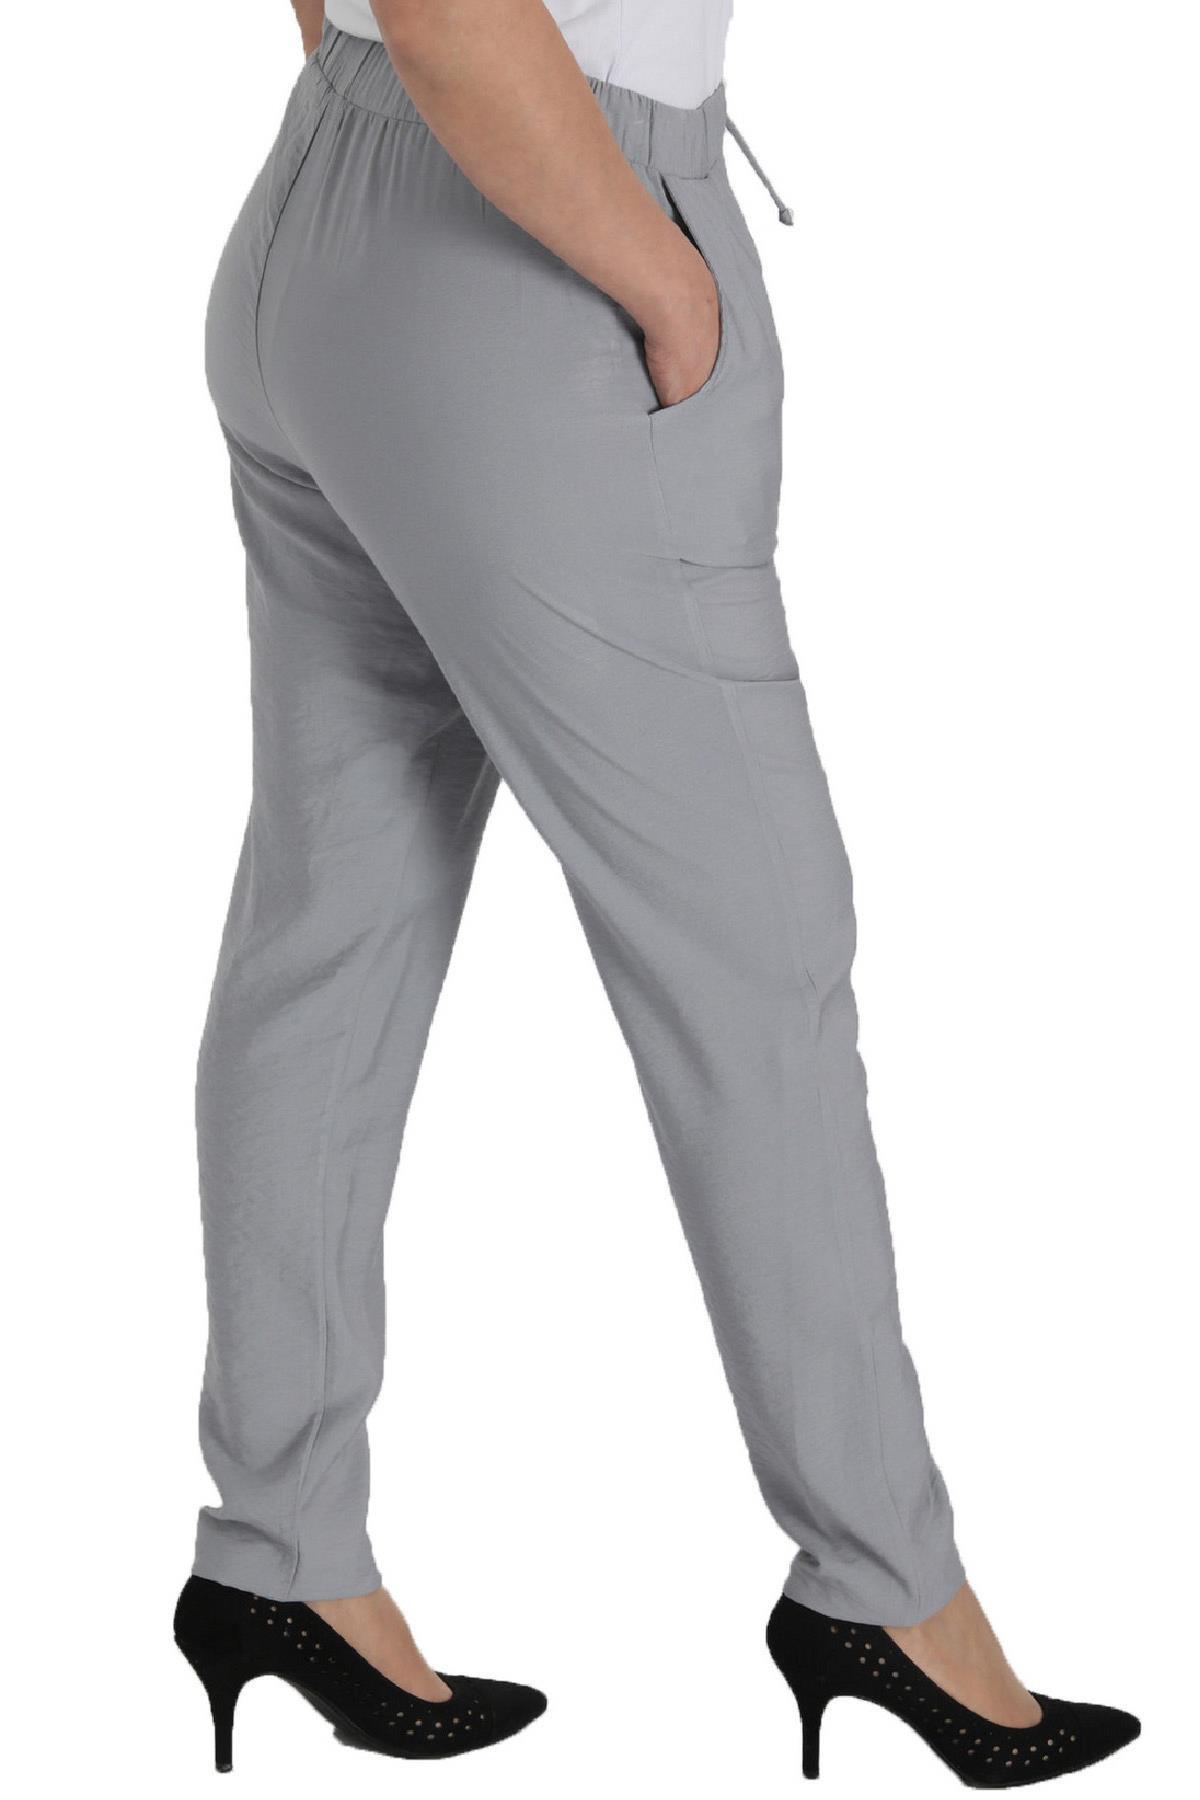 fierte-kadin-buyuk-beden-pantolon-lm62041-keten-normal-elastik-bel-dar-paca-spor-cep-mavi-siyah-yesi-19453.jpg